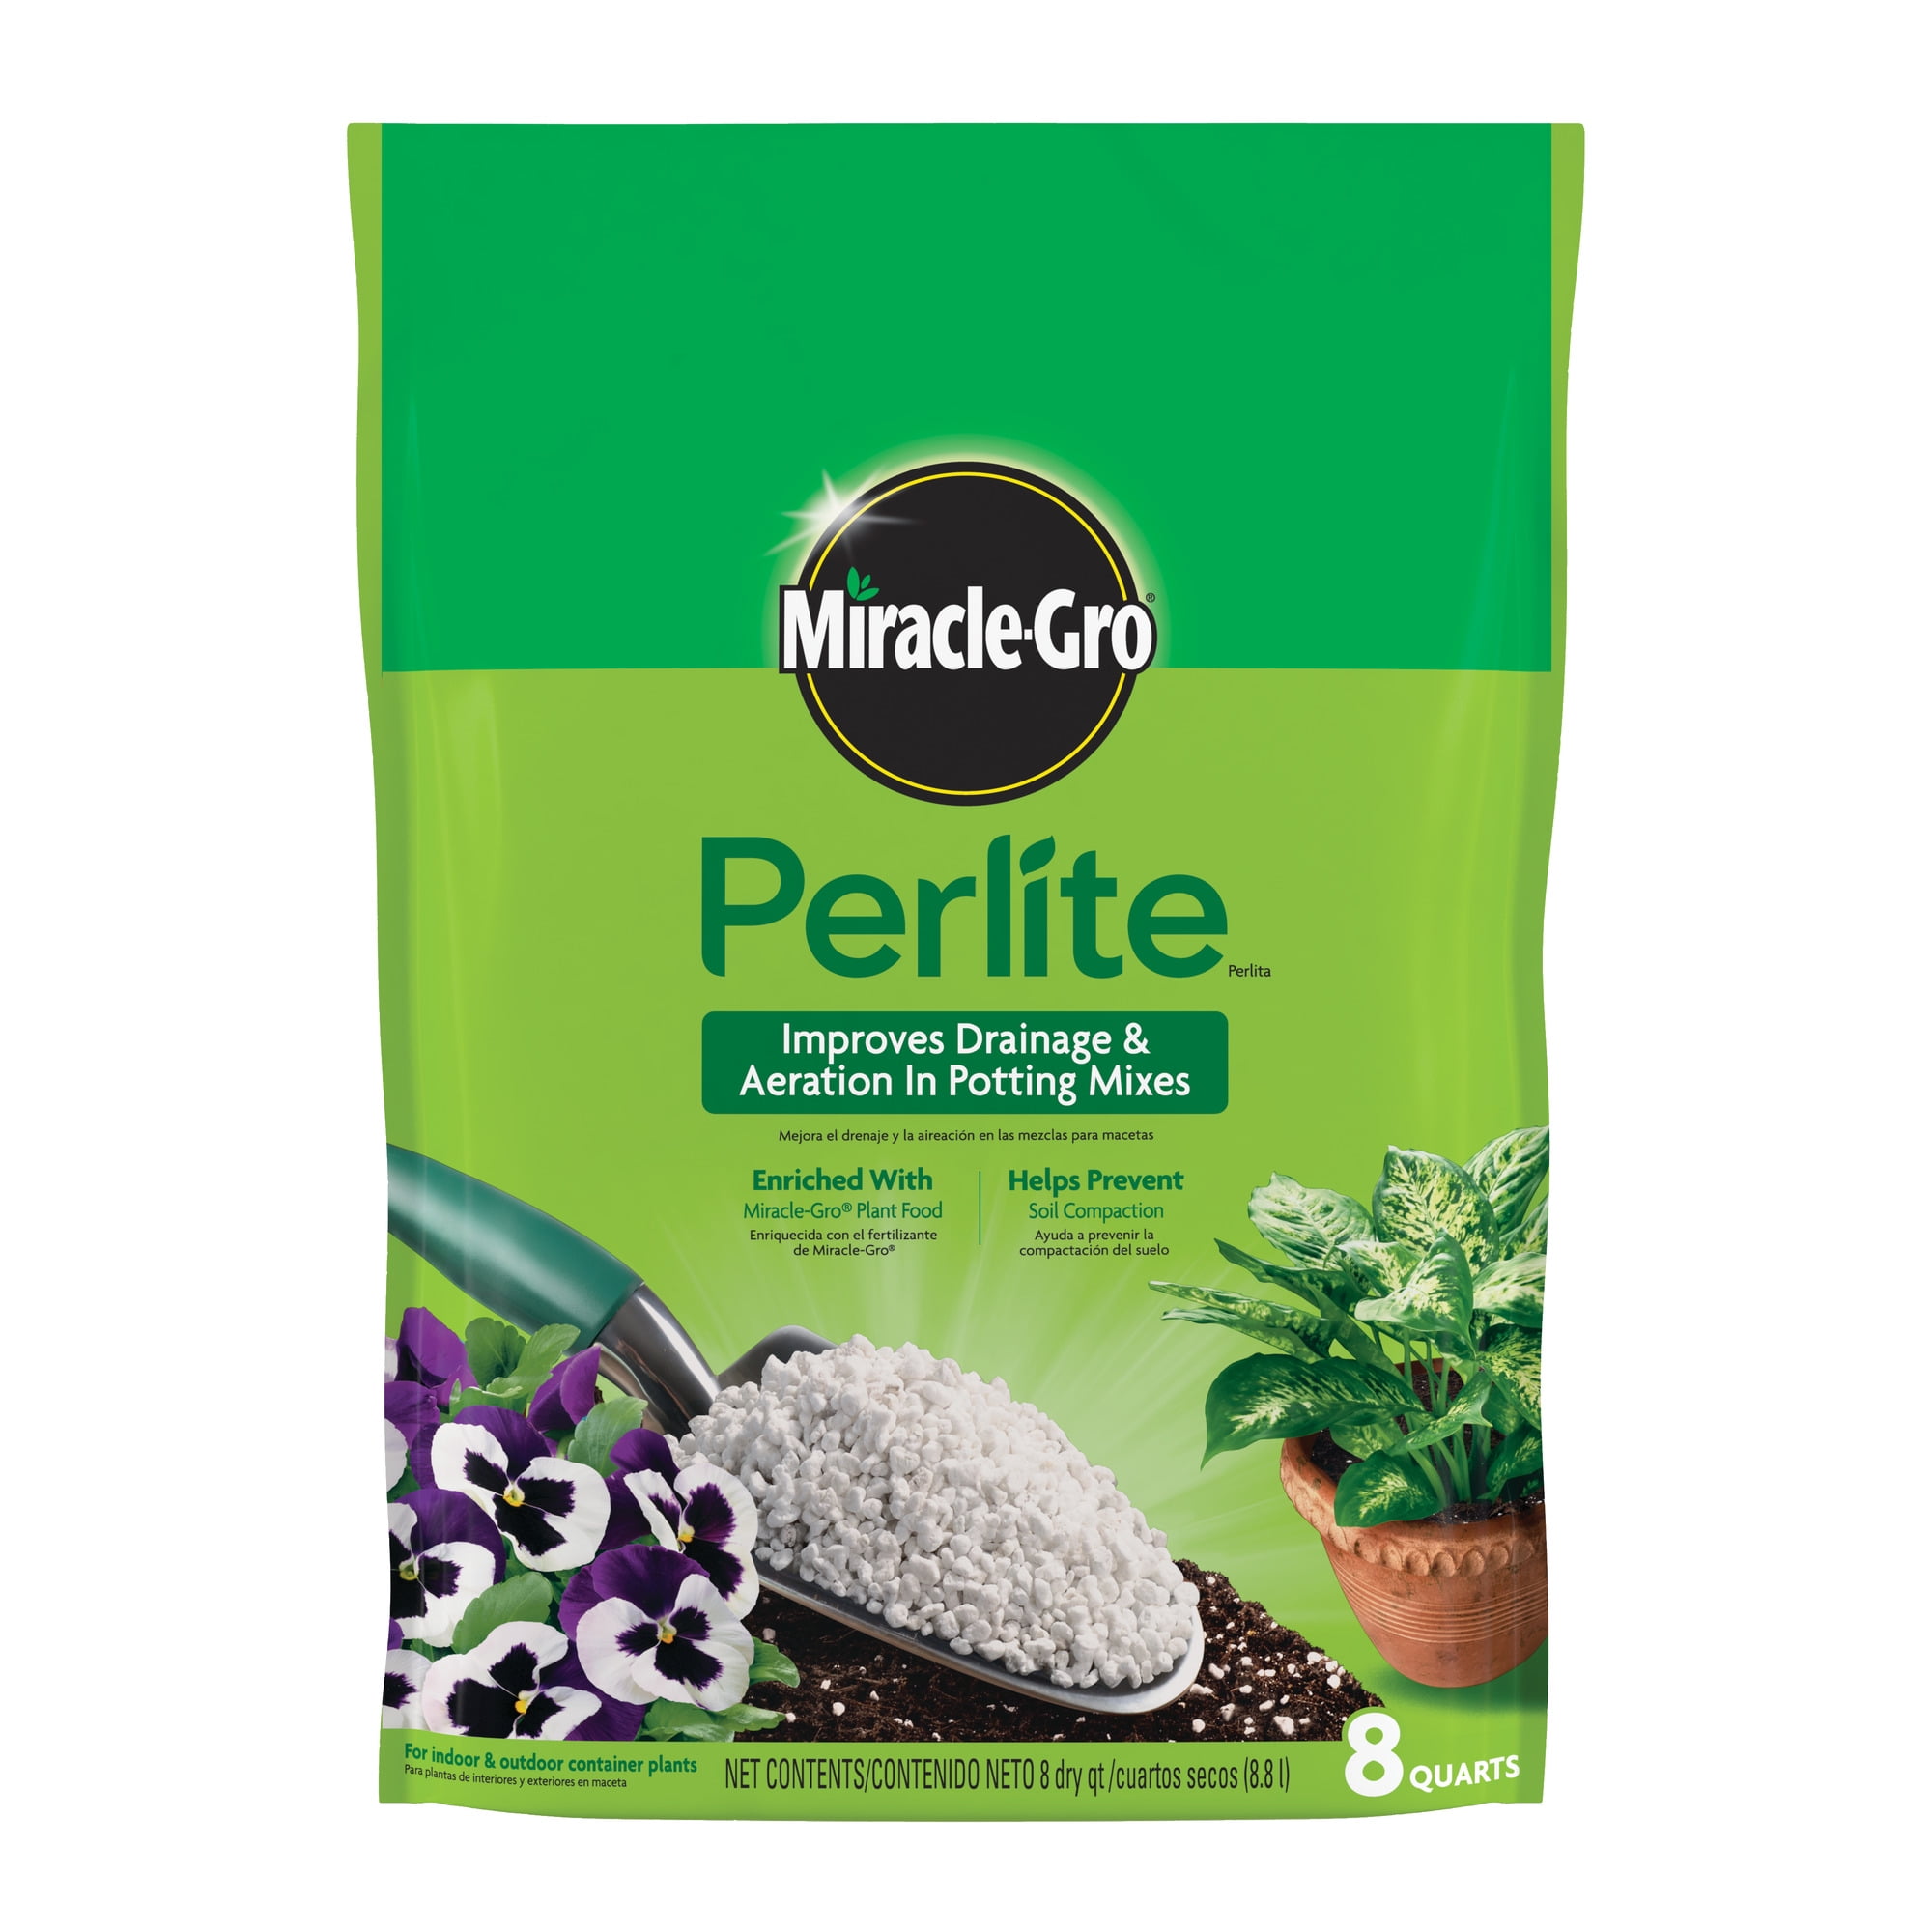 Plantonix Perlite Bliss Premium Horticultural Grade Perlite - 24 Quarts 